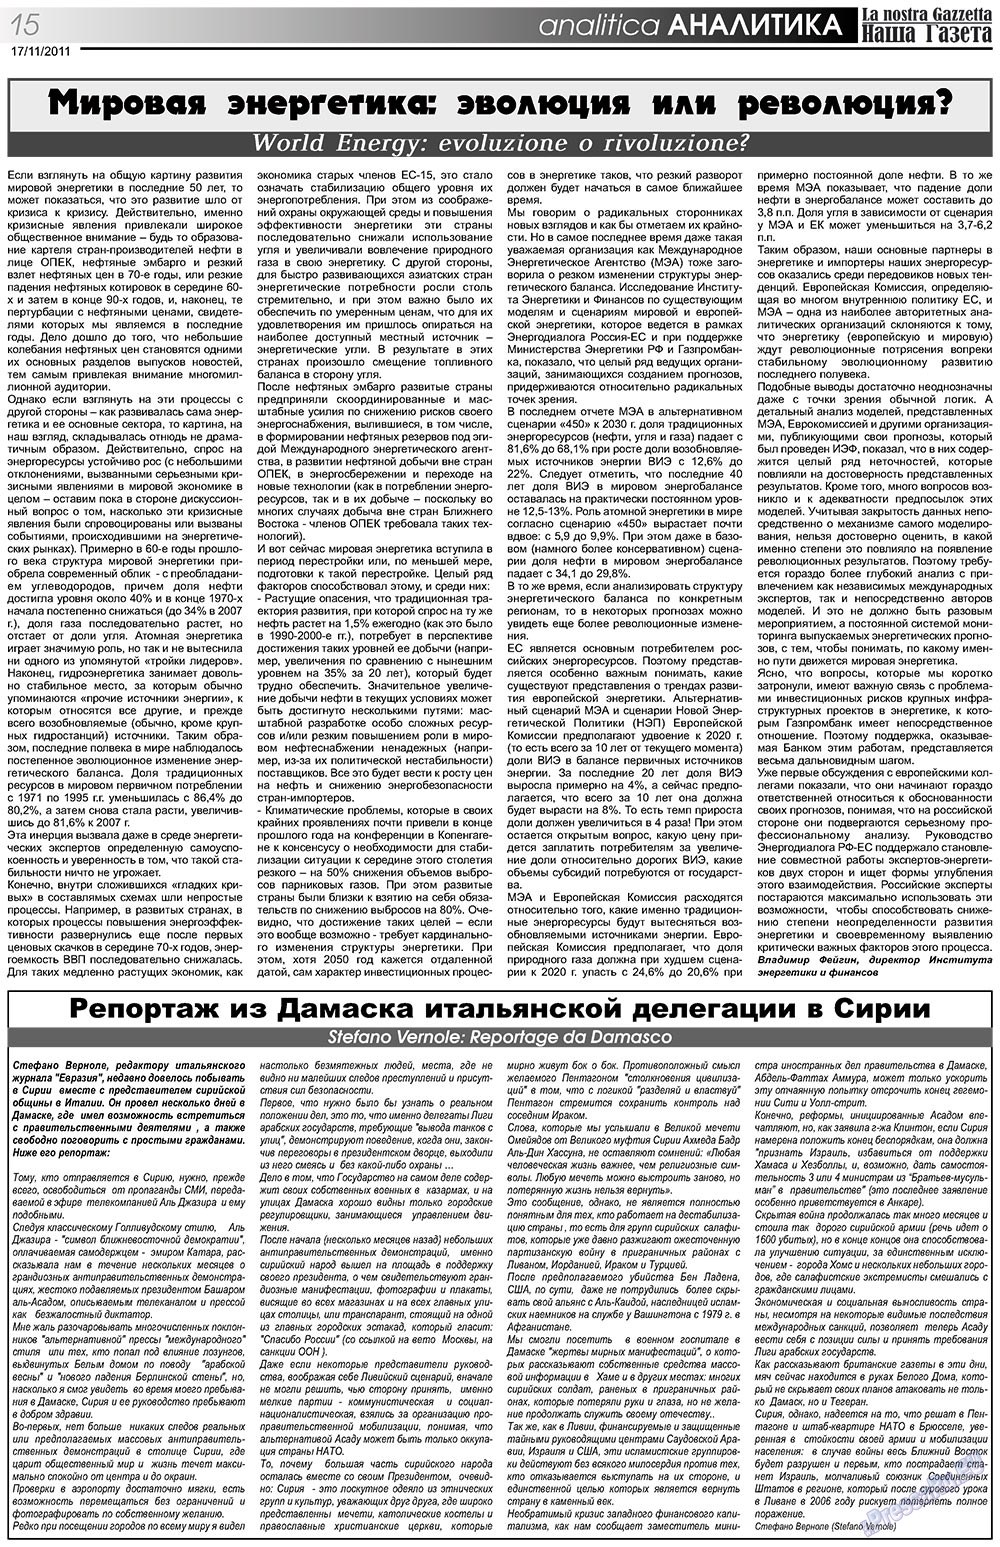 Наша Газета Италия, газета. 2011 №145 стр.15